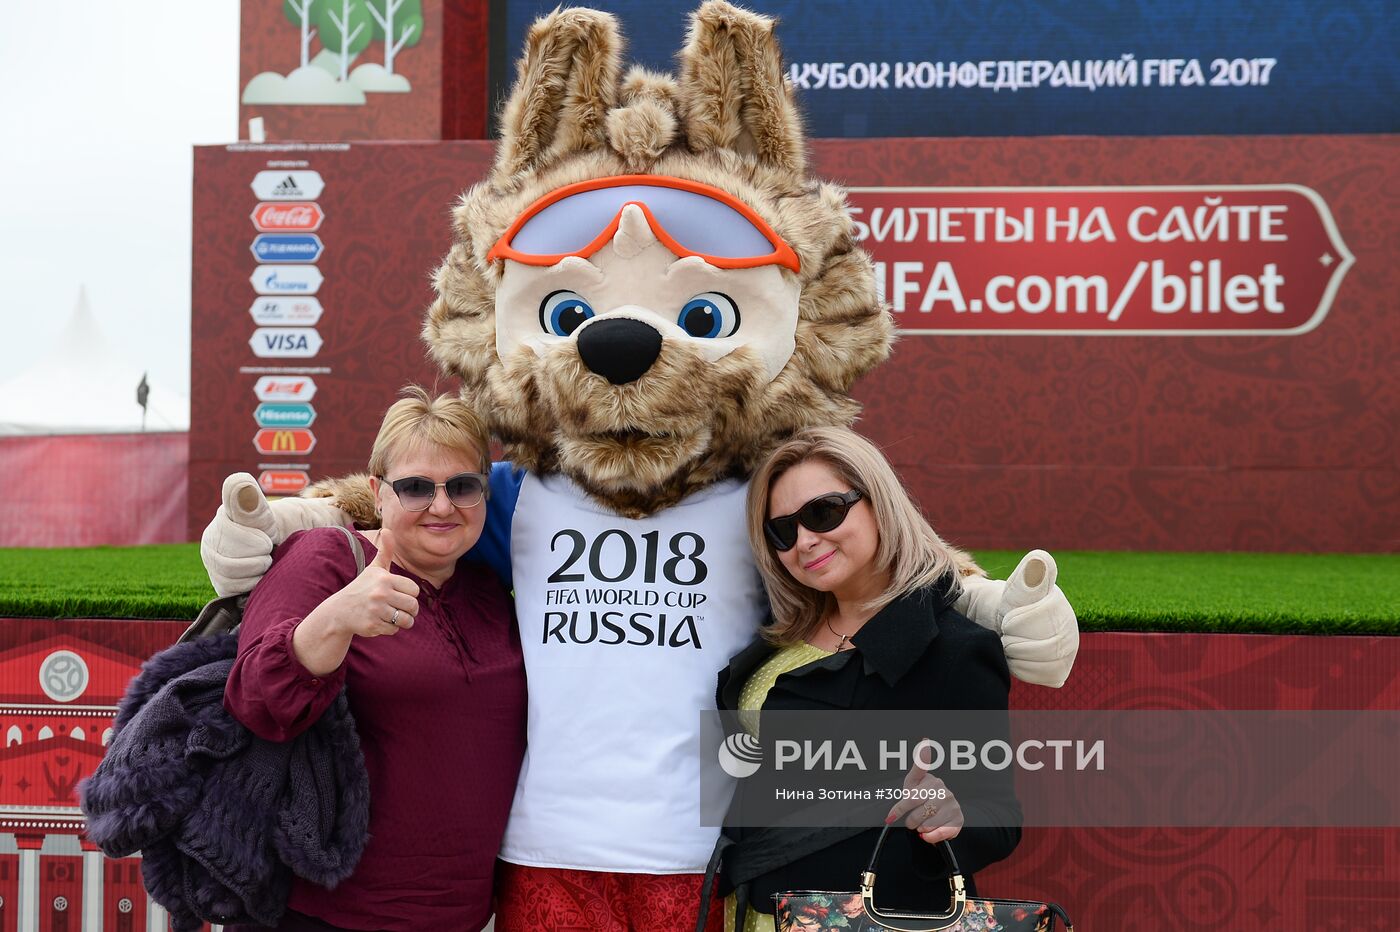 Открытие Парка Кубка конфедераций 2017 в Сочи